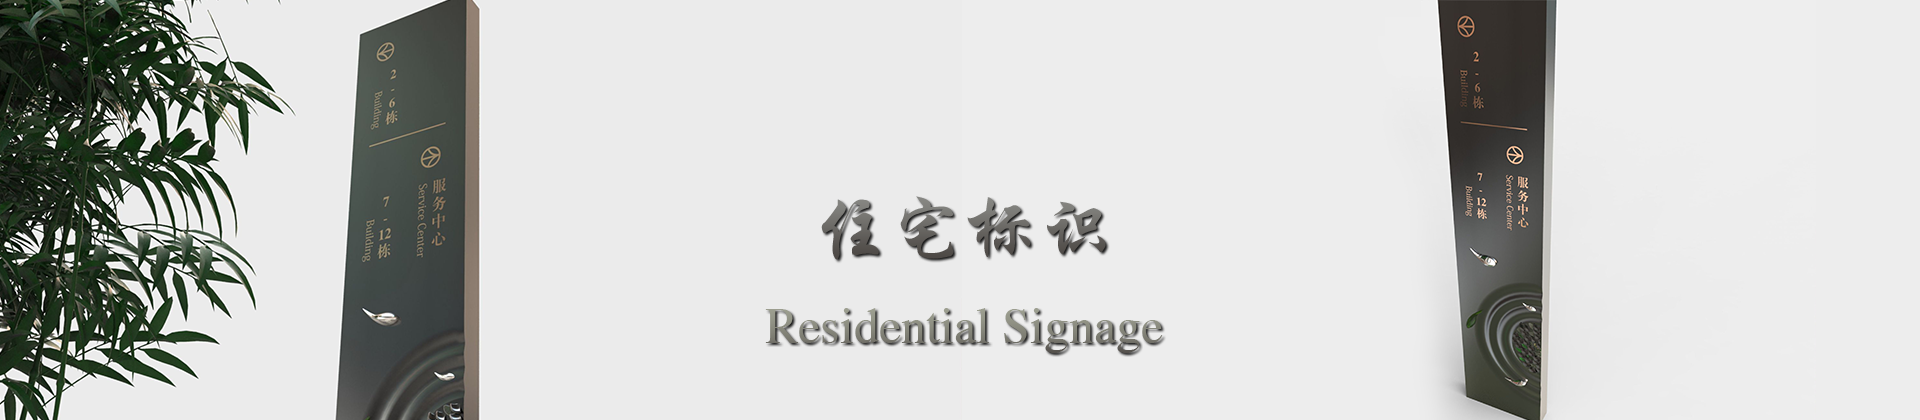 武汉小区楼盘住宅标识标牌设计厂家-中涵标识